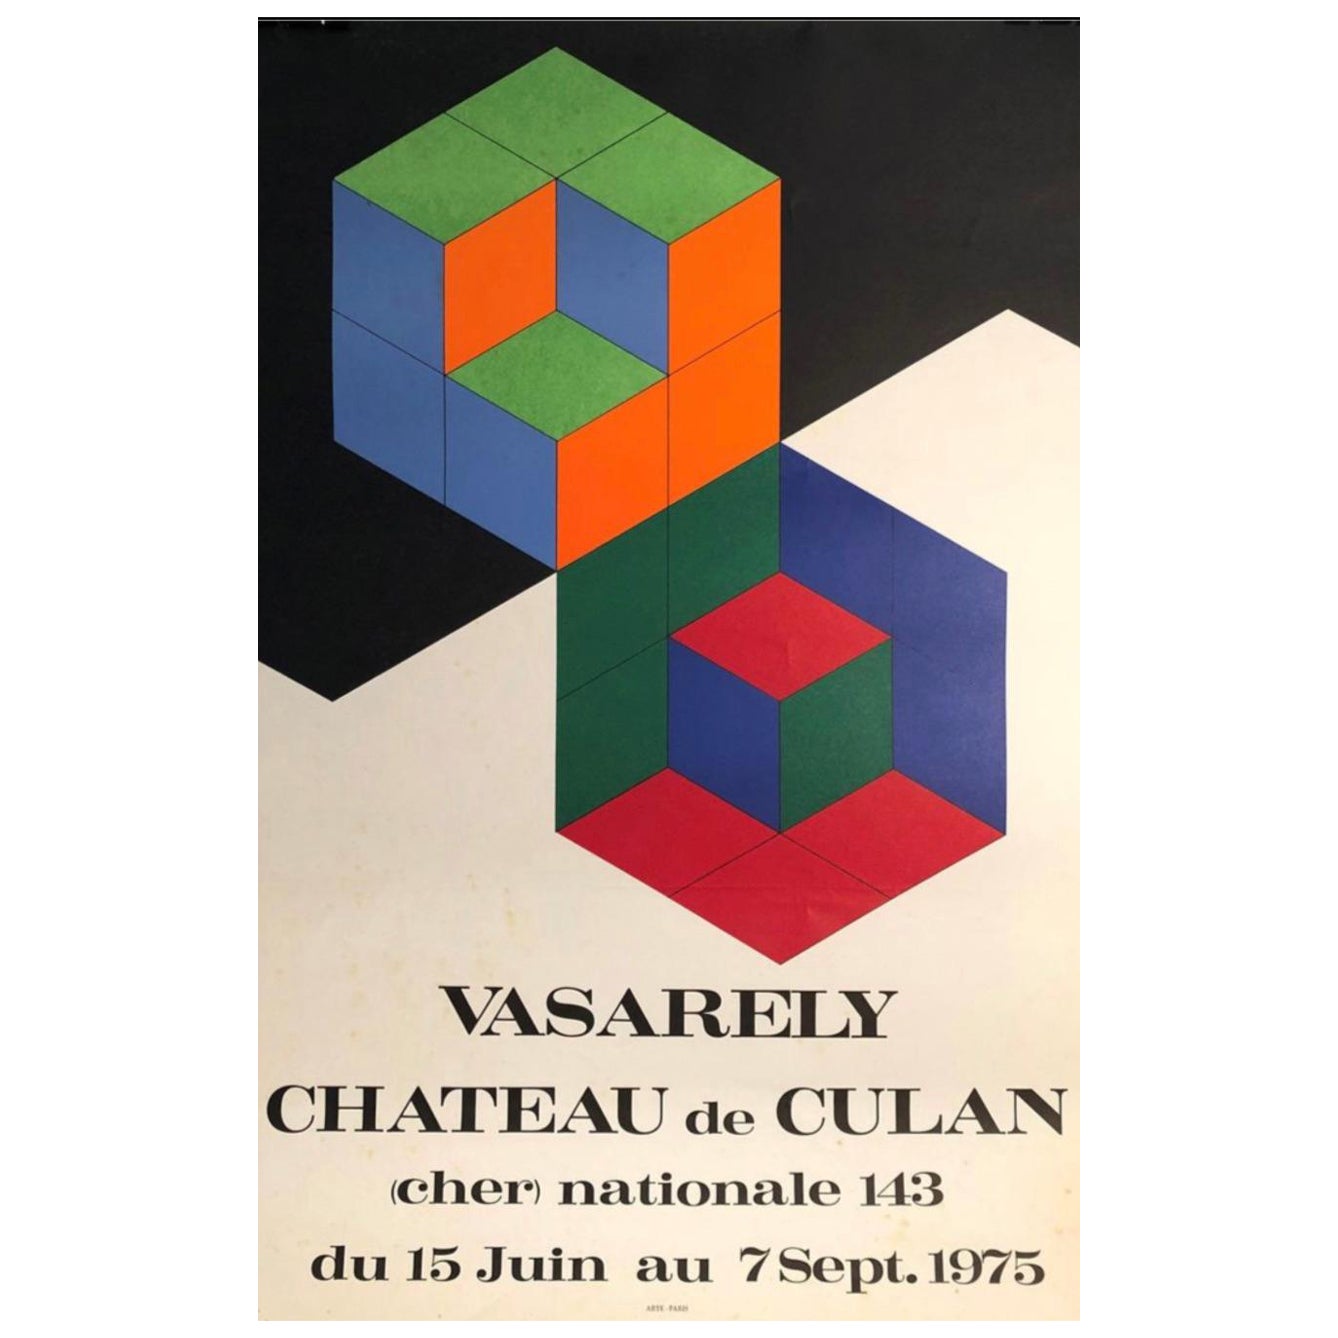 Original-Vintage-Kunst- und Ausstellungsplakat, „Vasarely Chateau de Culan“, 1975